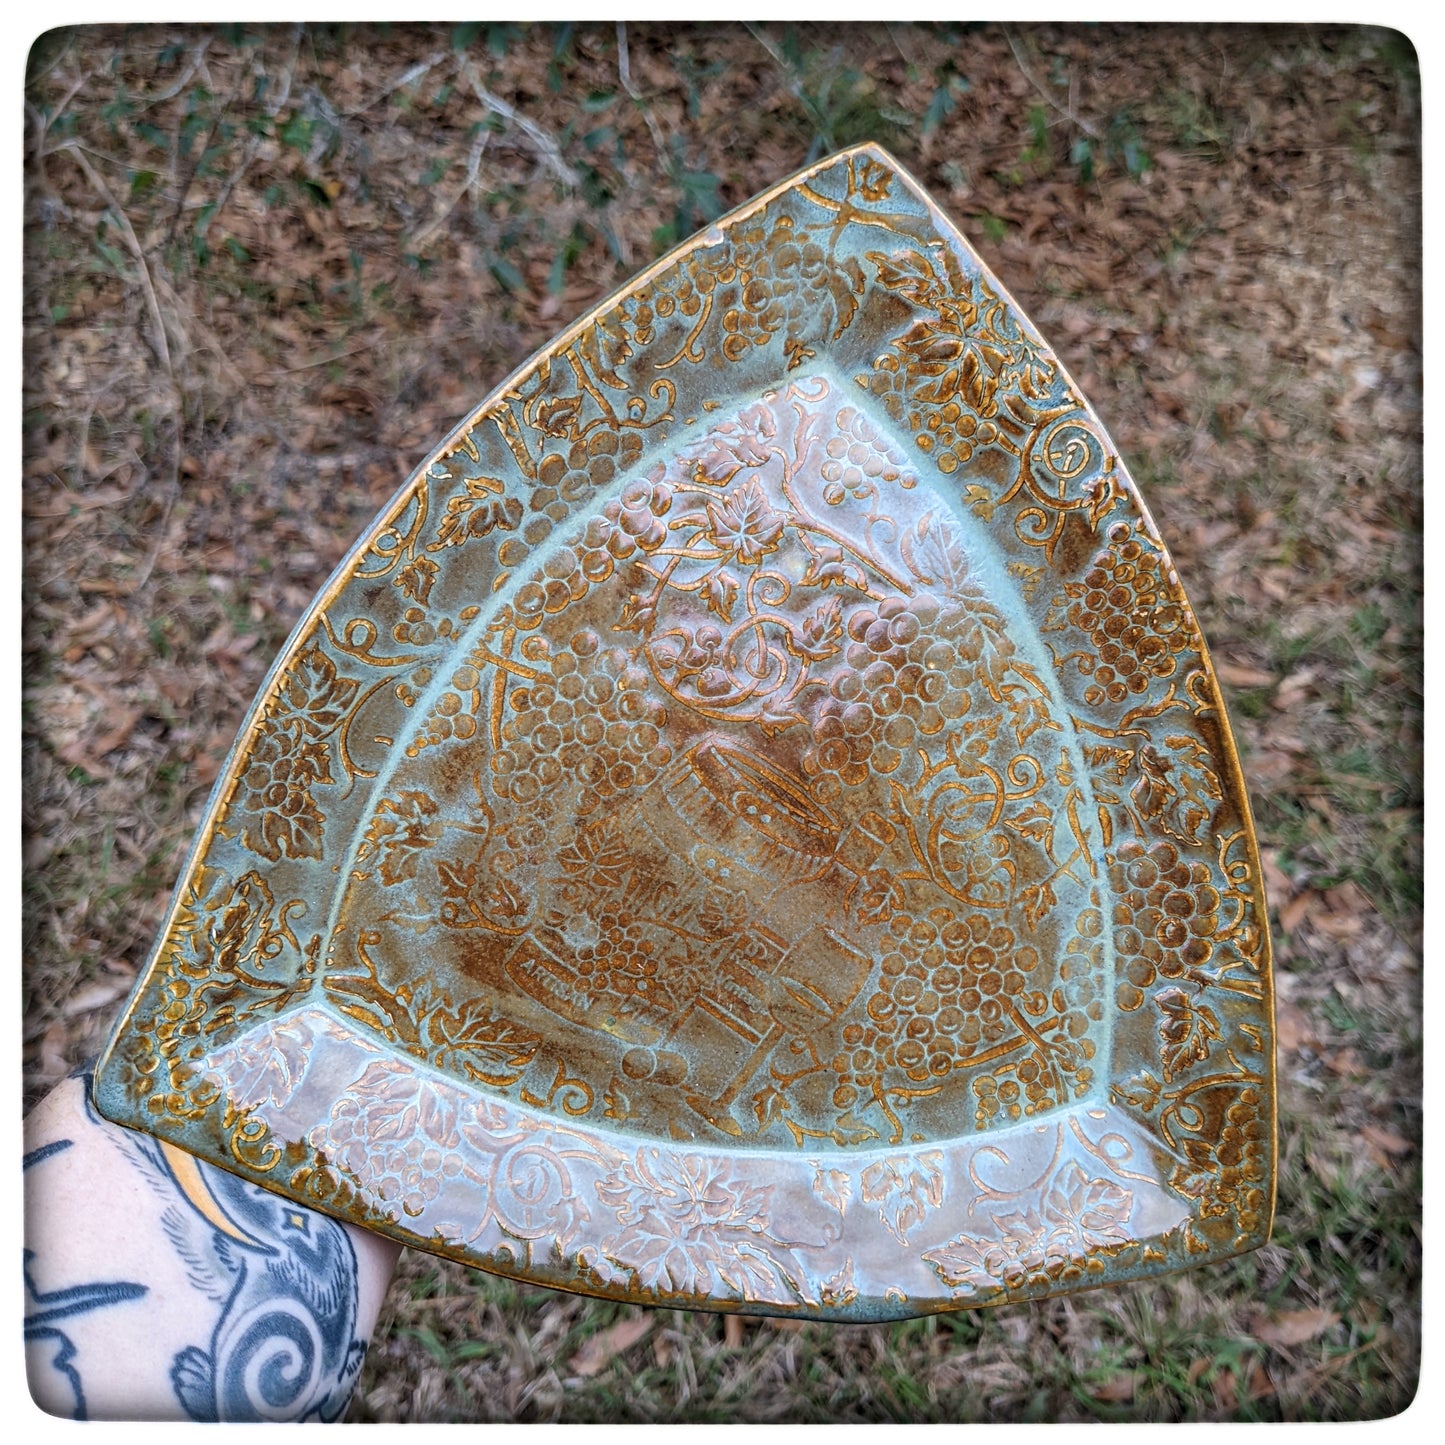 Grapevine Triangle Dish (8.5 inch)